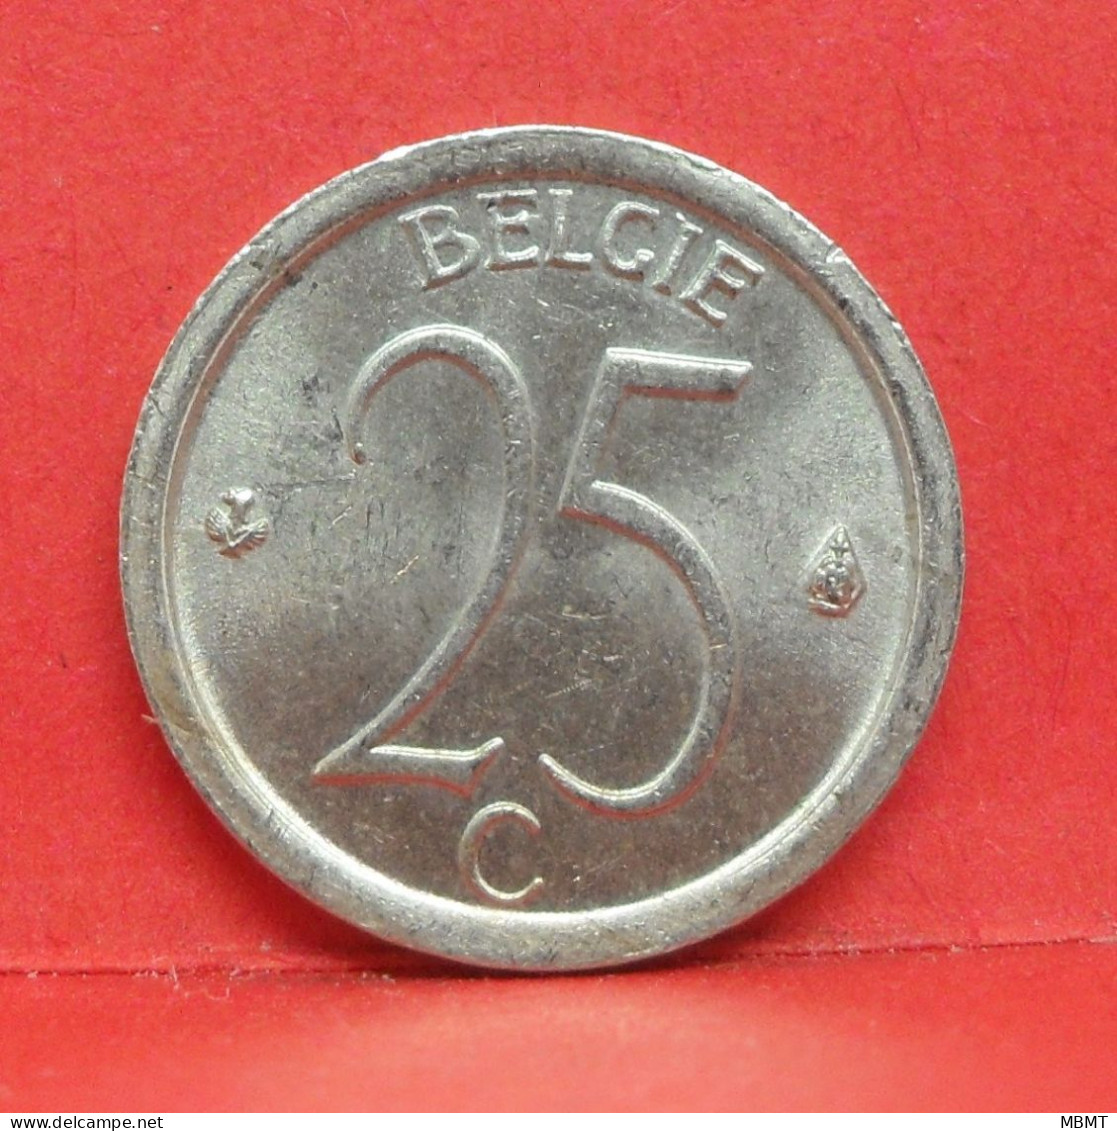 25 Centimes 1969 - TTB - Pièce Monnaie Belgie - Article N°1866 - 25 Centimes